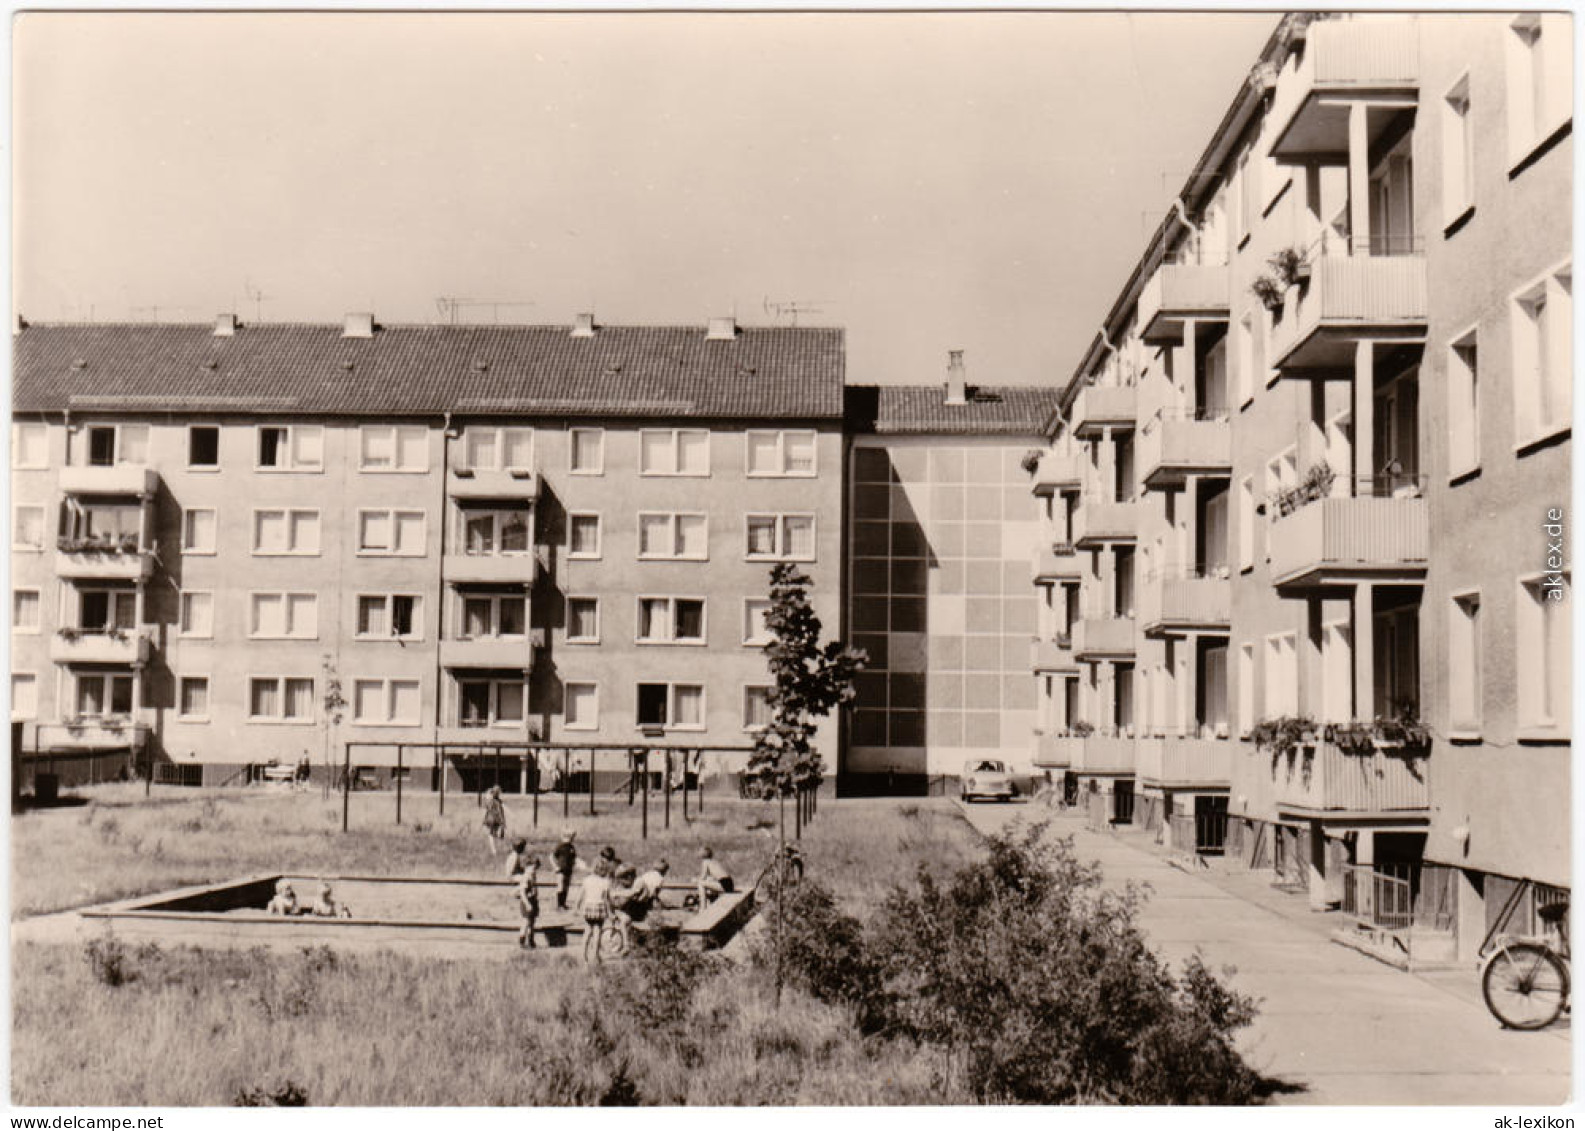 Elsterwerda Wikow Pappelweg - Schulstraße  Foto Ansichtskarte  1973 - Elsterwerda